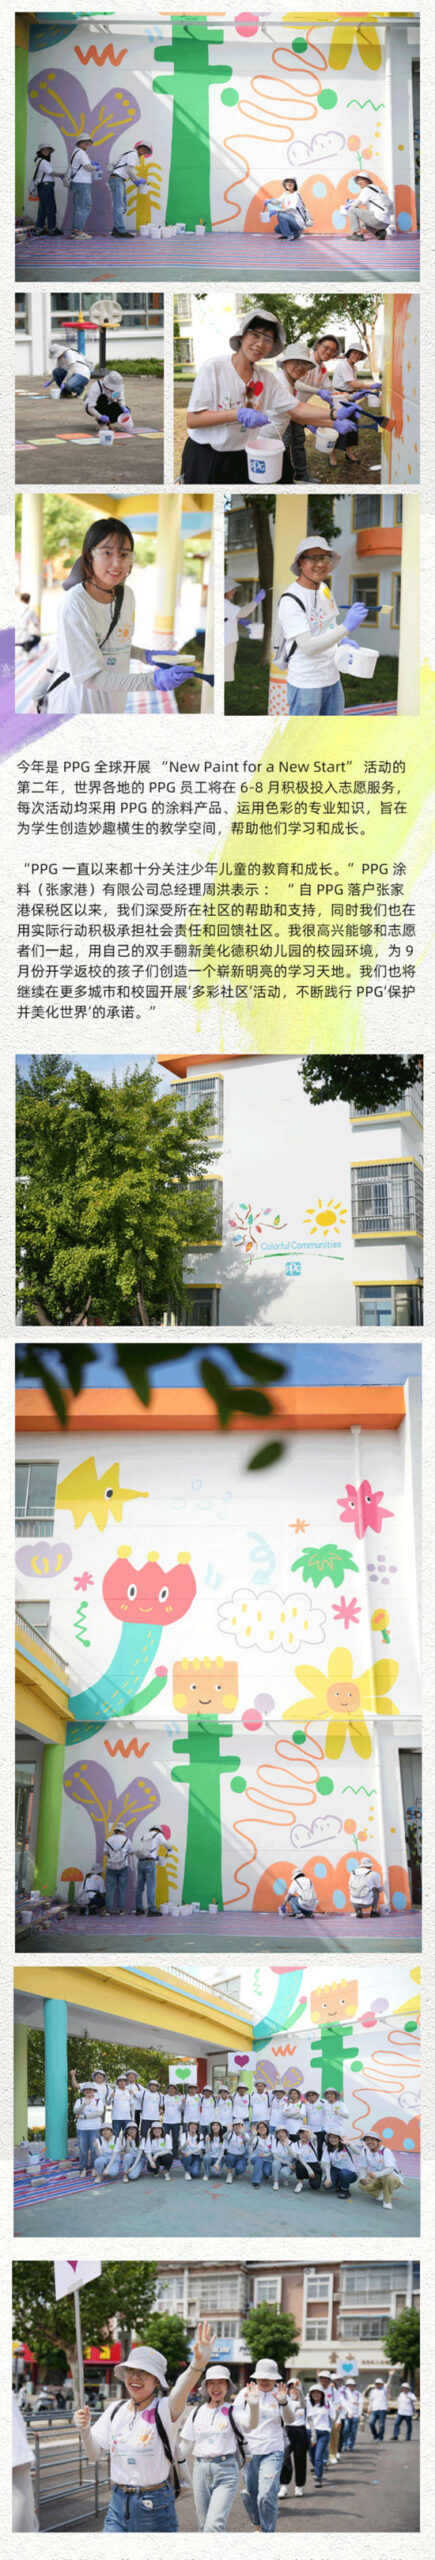 PPG“多彩社区-用色彩点亮梦想”活动让张家港市德积幼儿园焕然一新